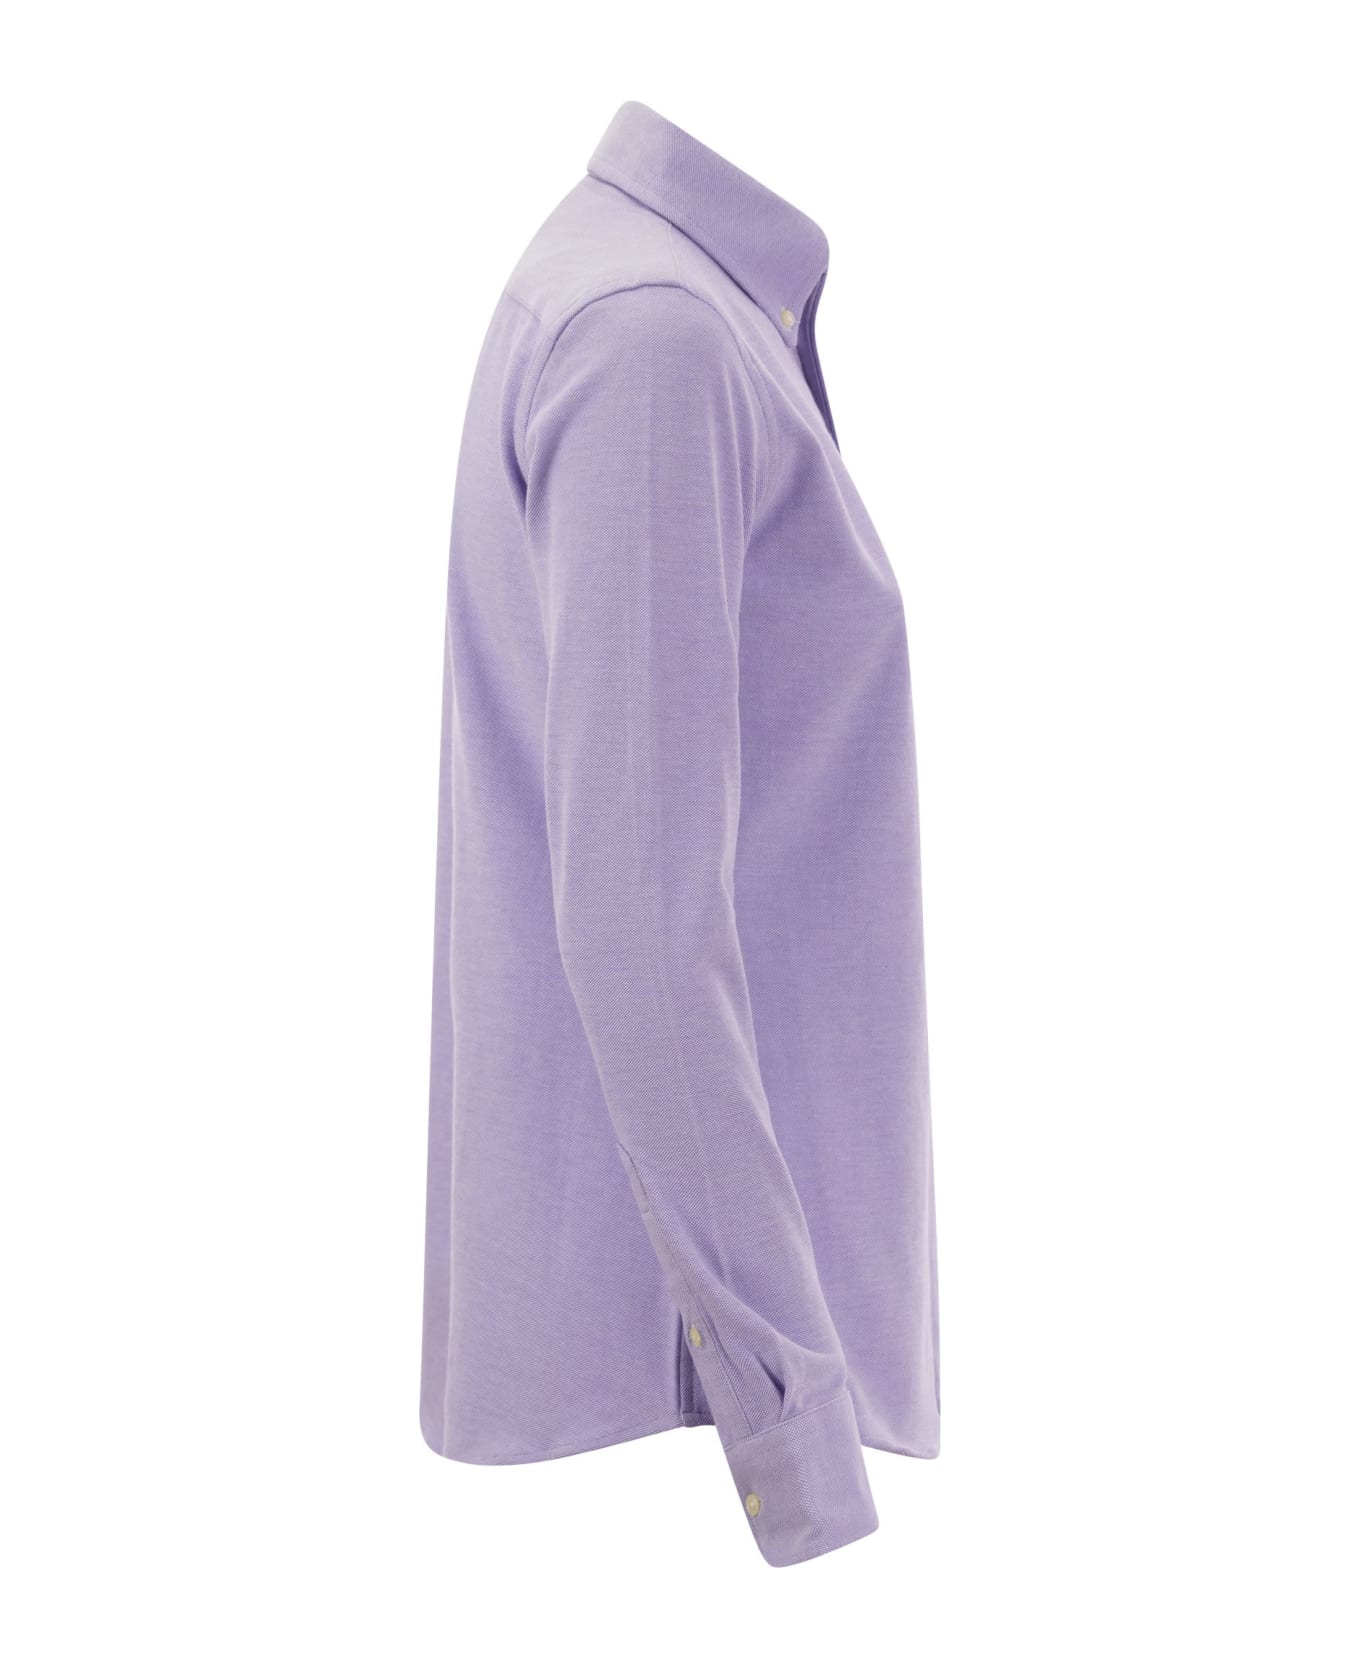 Ralph Lauren Cotton Oxford Shirt - Lilac